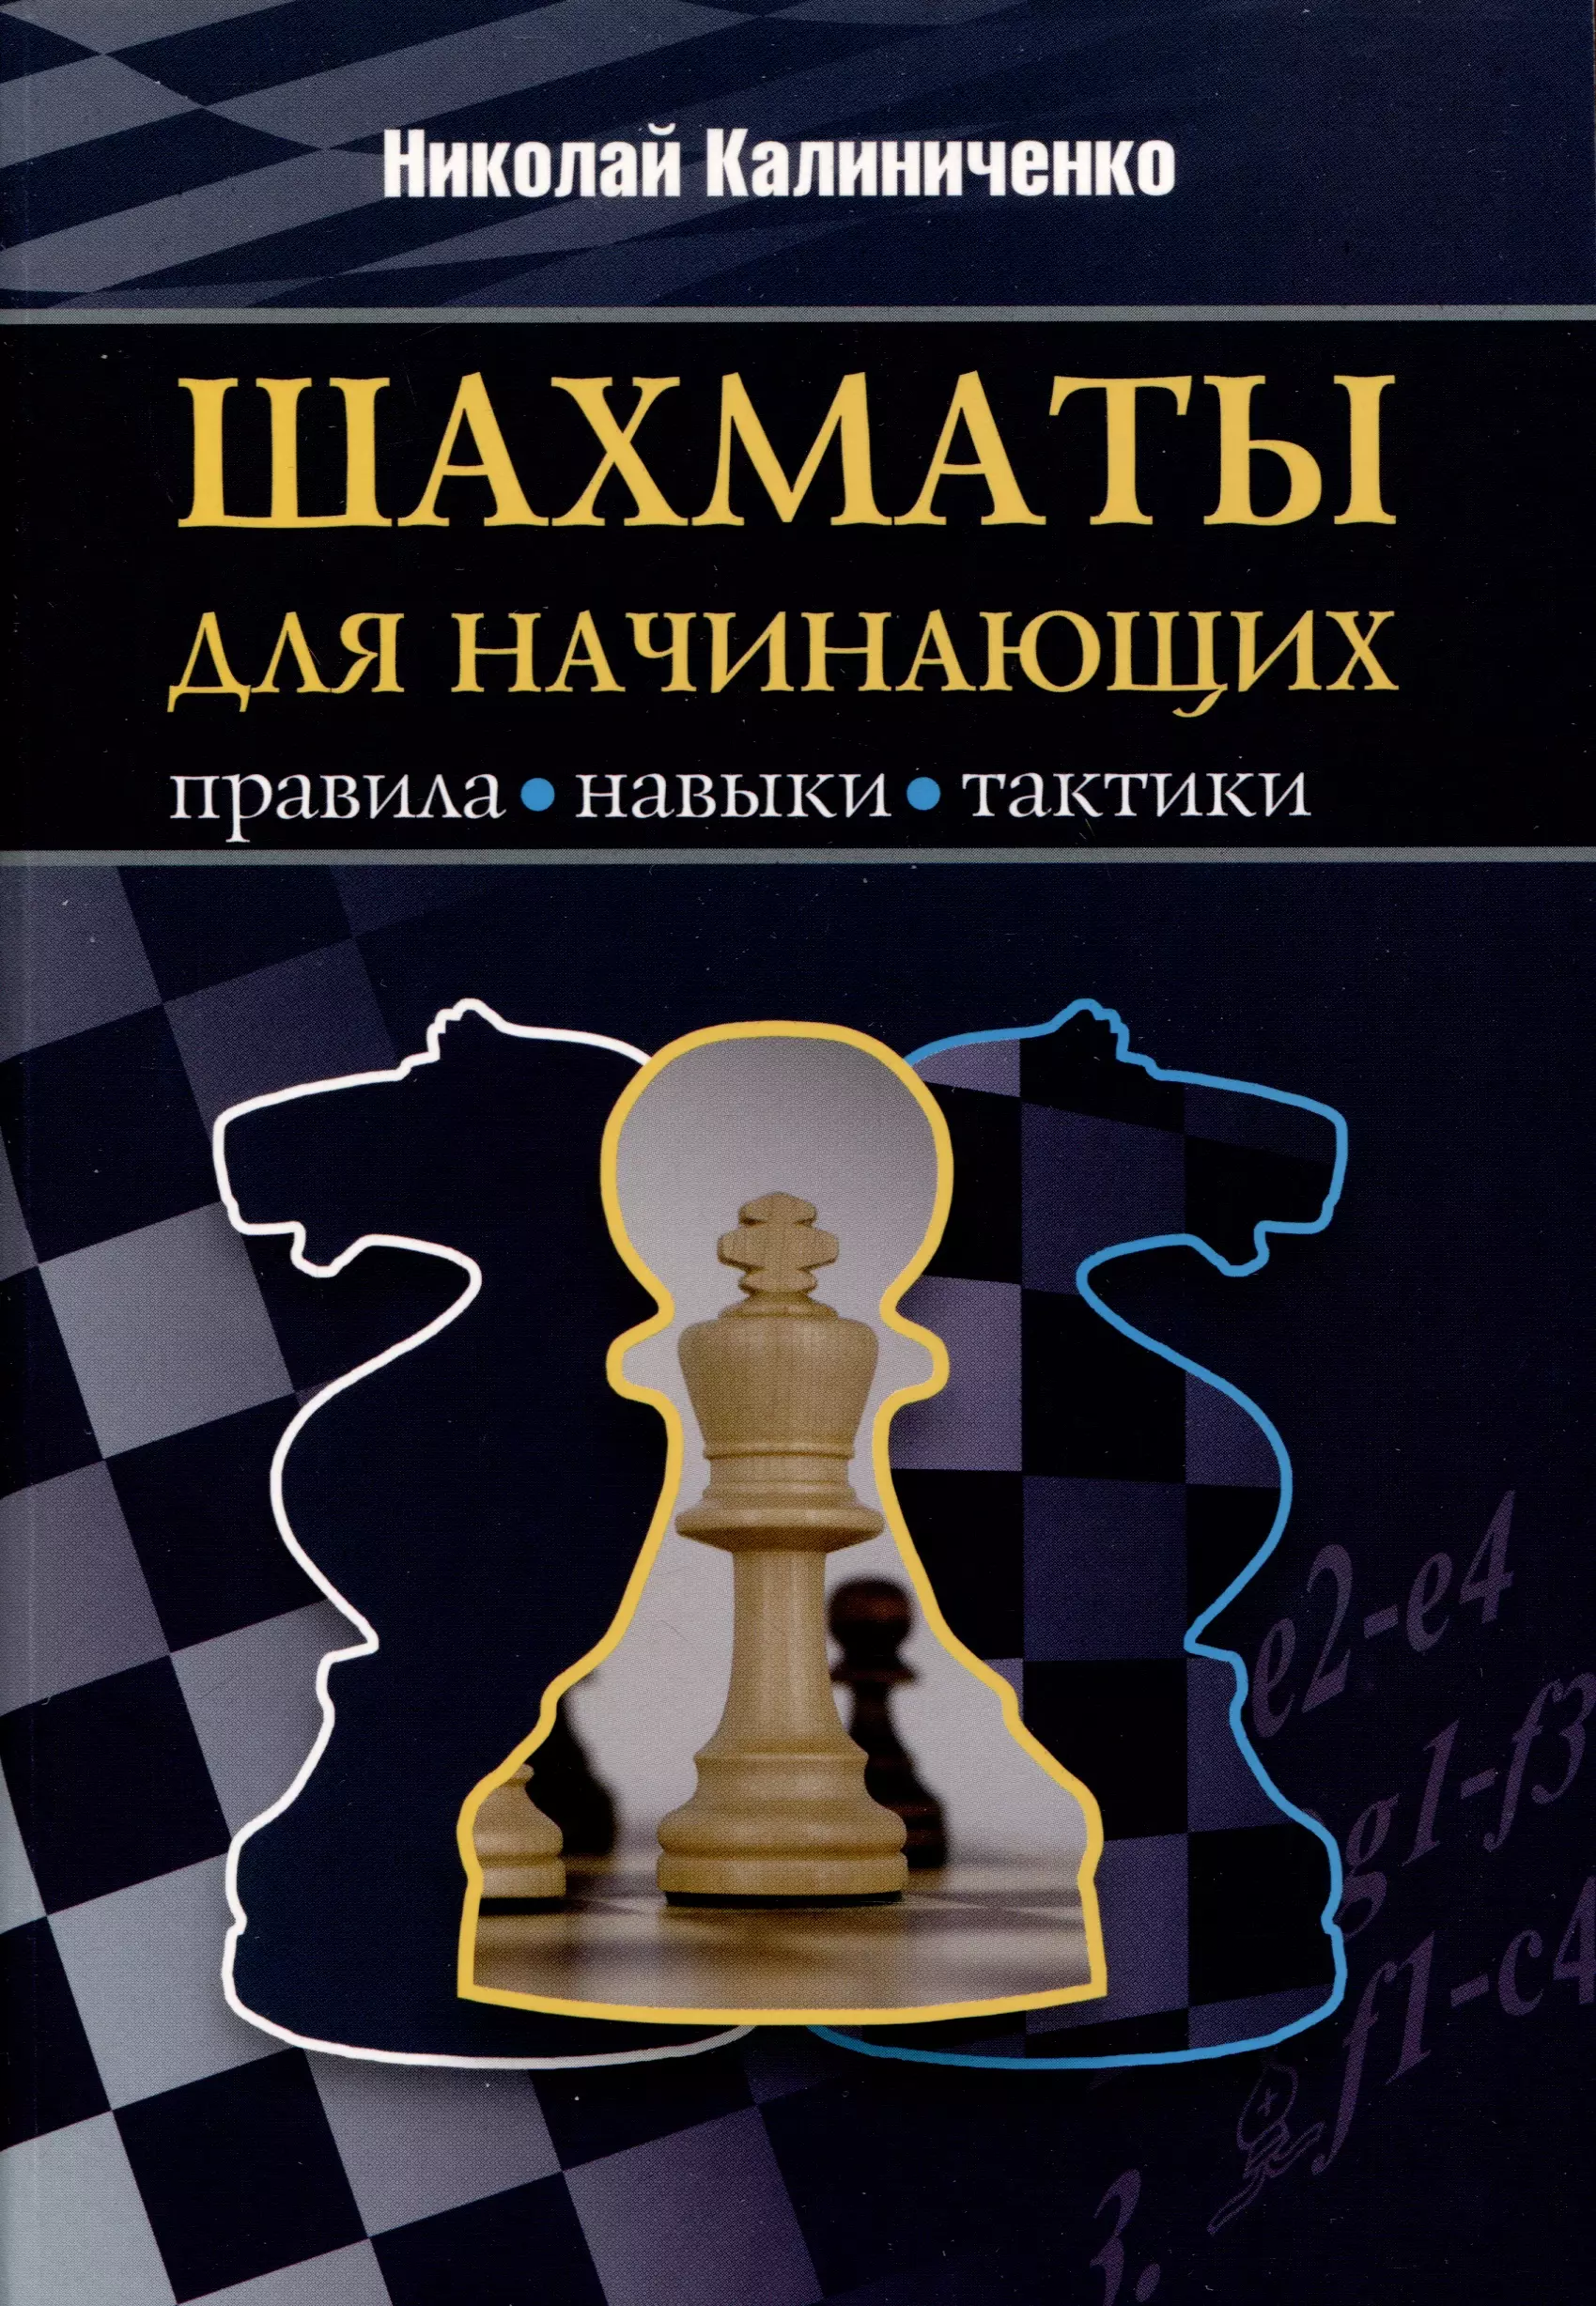 Калиниченко Николай Михайлович Шахматы для начинающих. Правила, навыки, тактики шахматы для начинающих правила навыки тактики